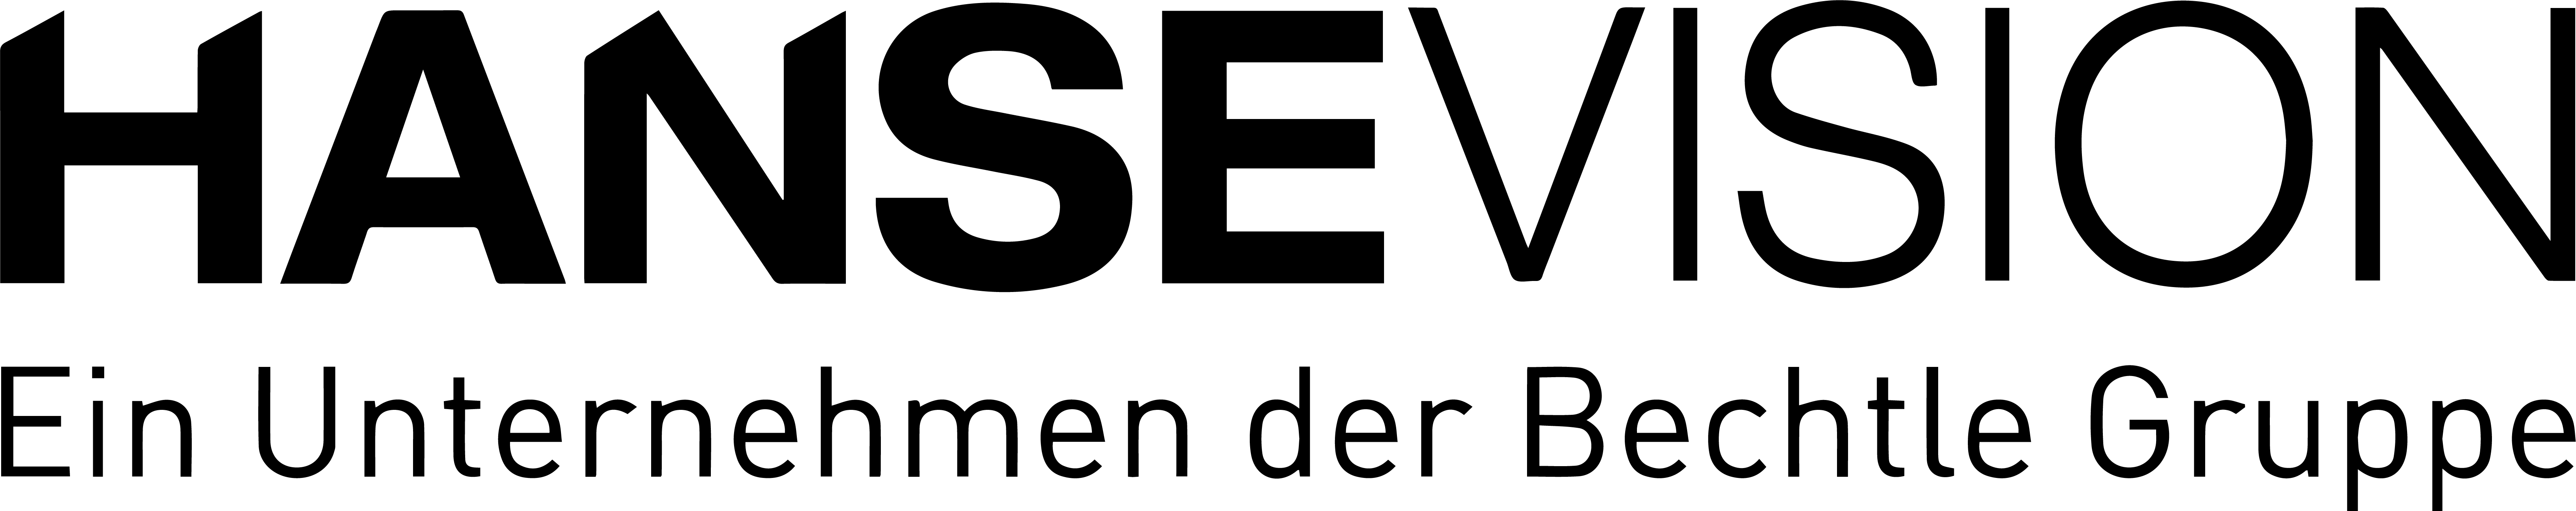 Logo_mit_Bechtle_s (3)-1